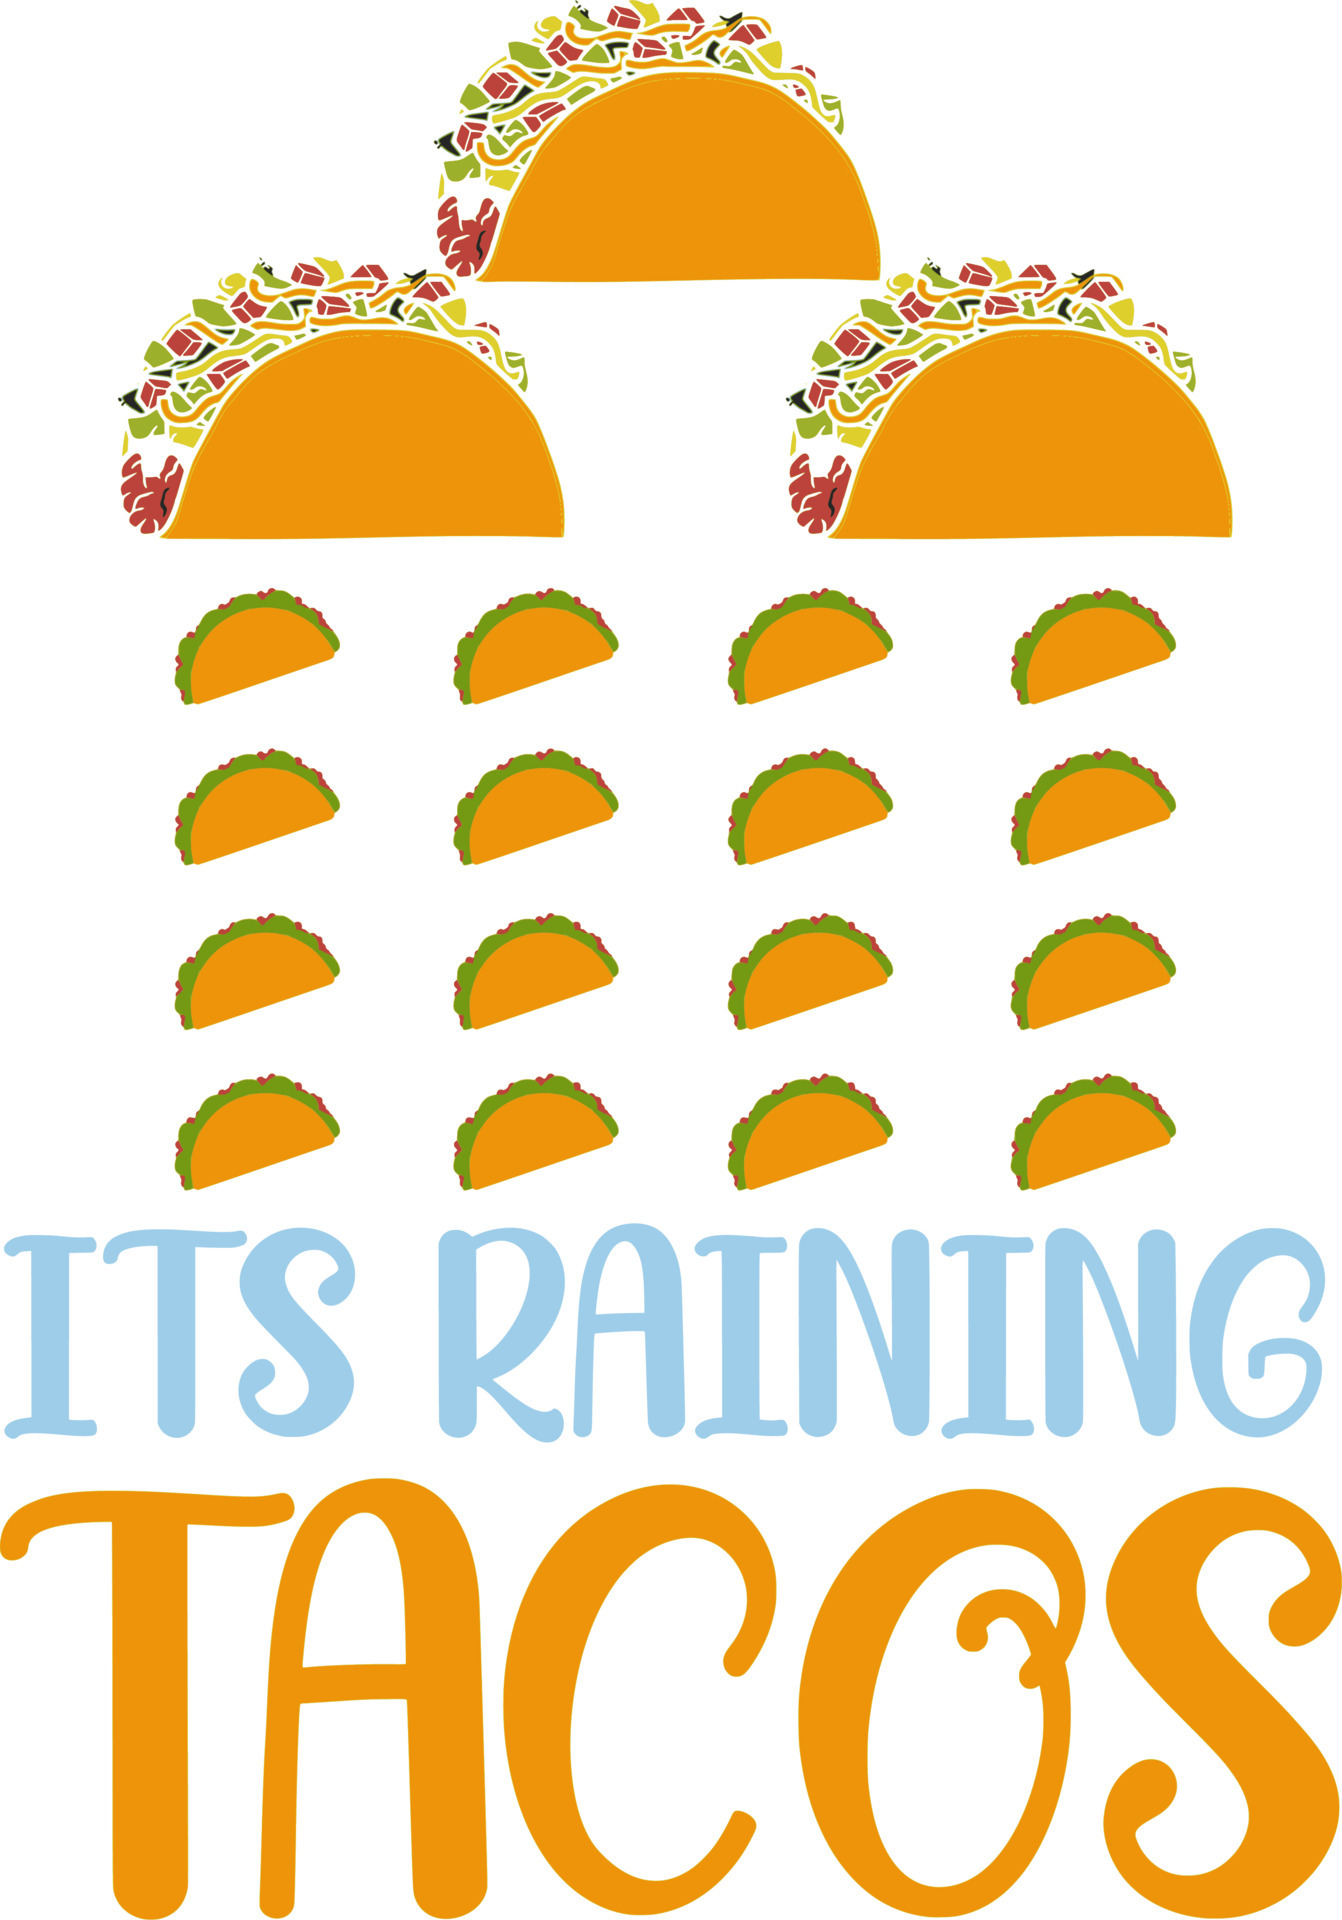 Raining Tacos